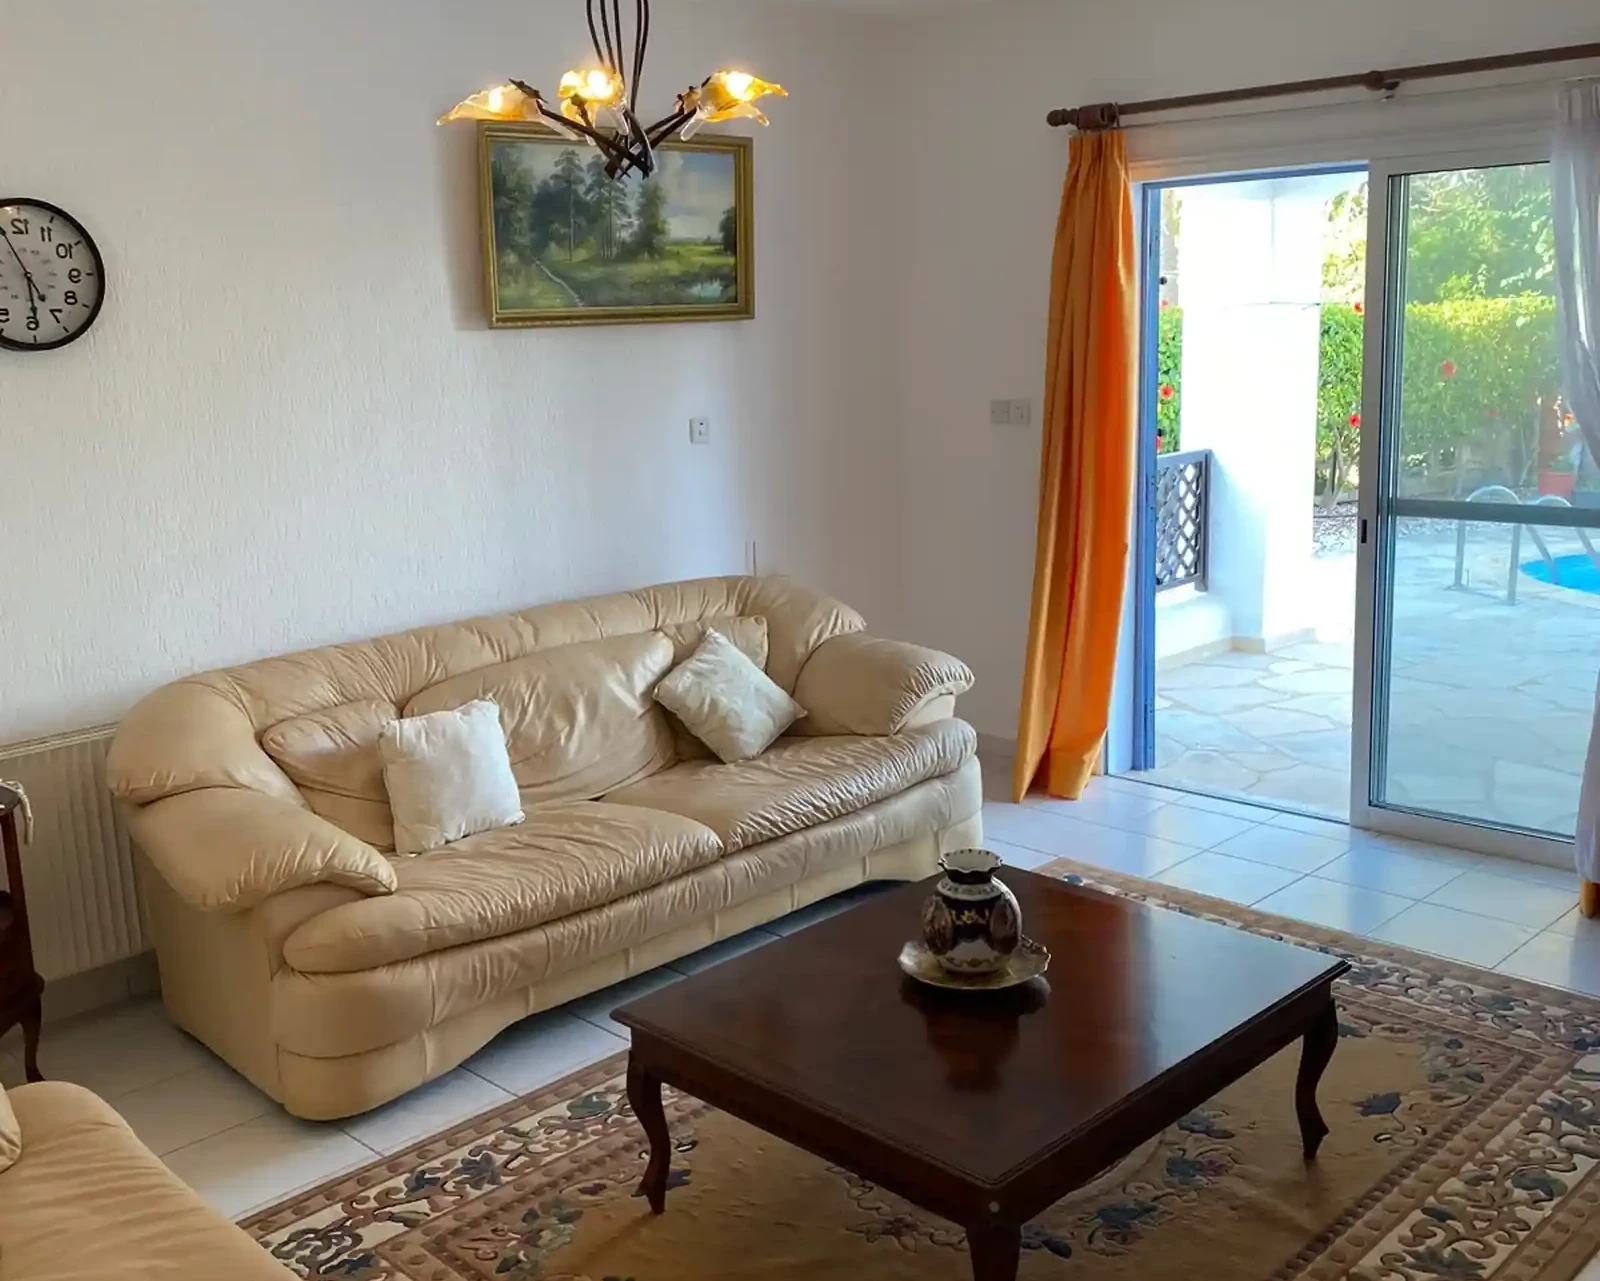 5-bedroom villa to rent €2.000, image 1